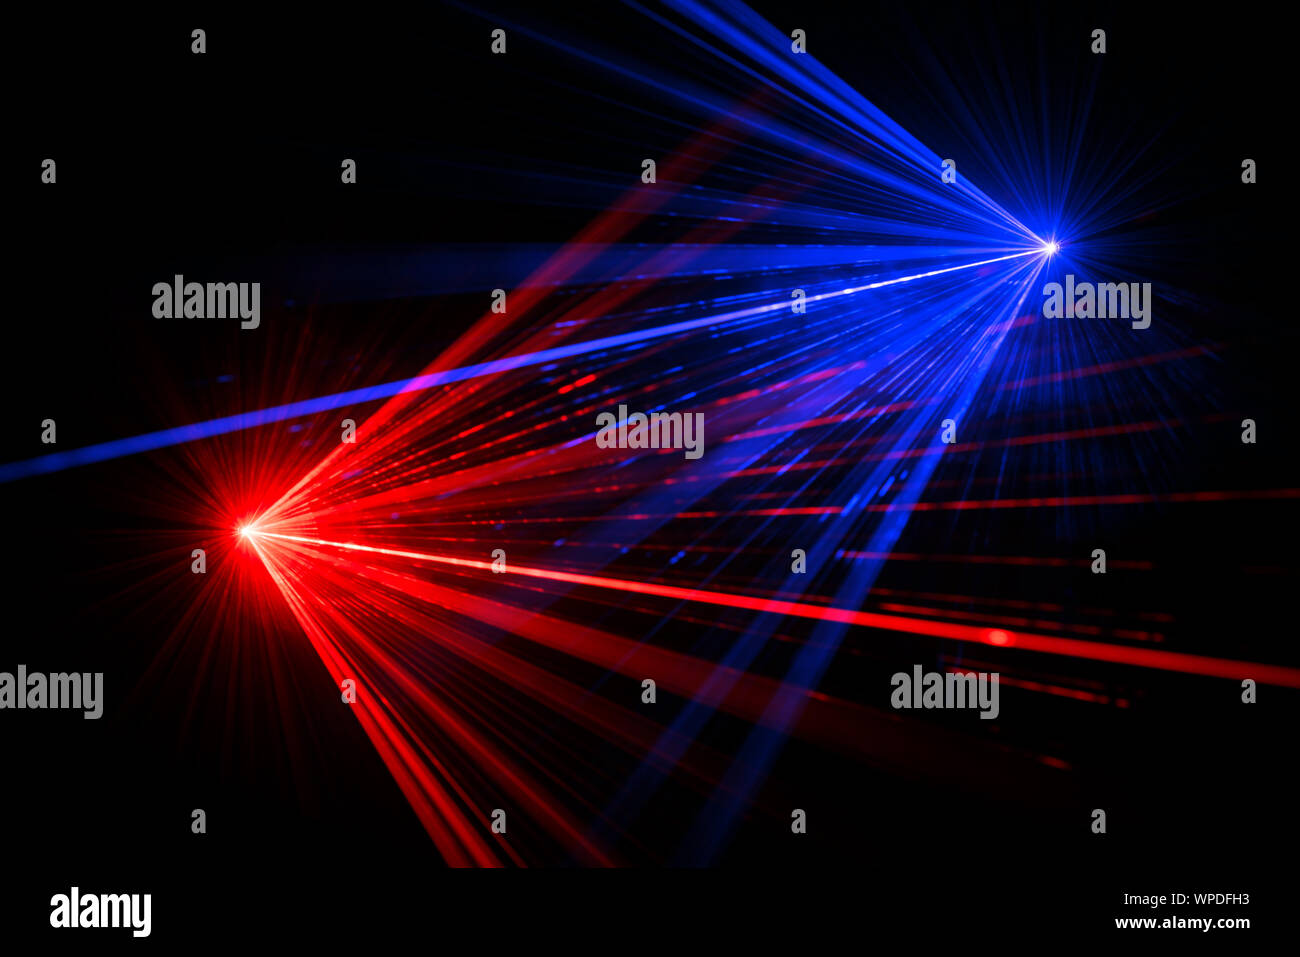 Blauen und Roten Laserstrahl Lichteffekte auf schwarzem Hintergrund Stockfoto